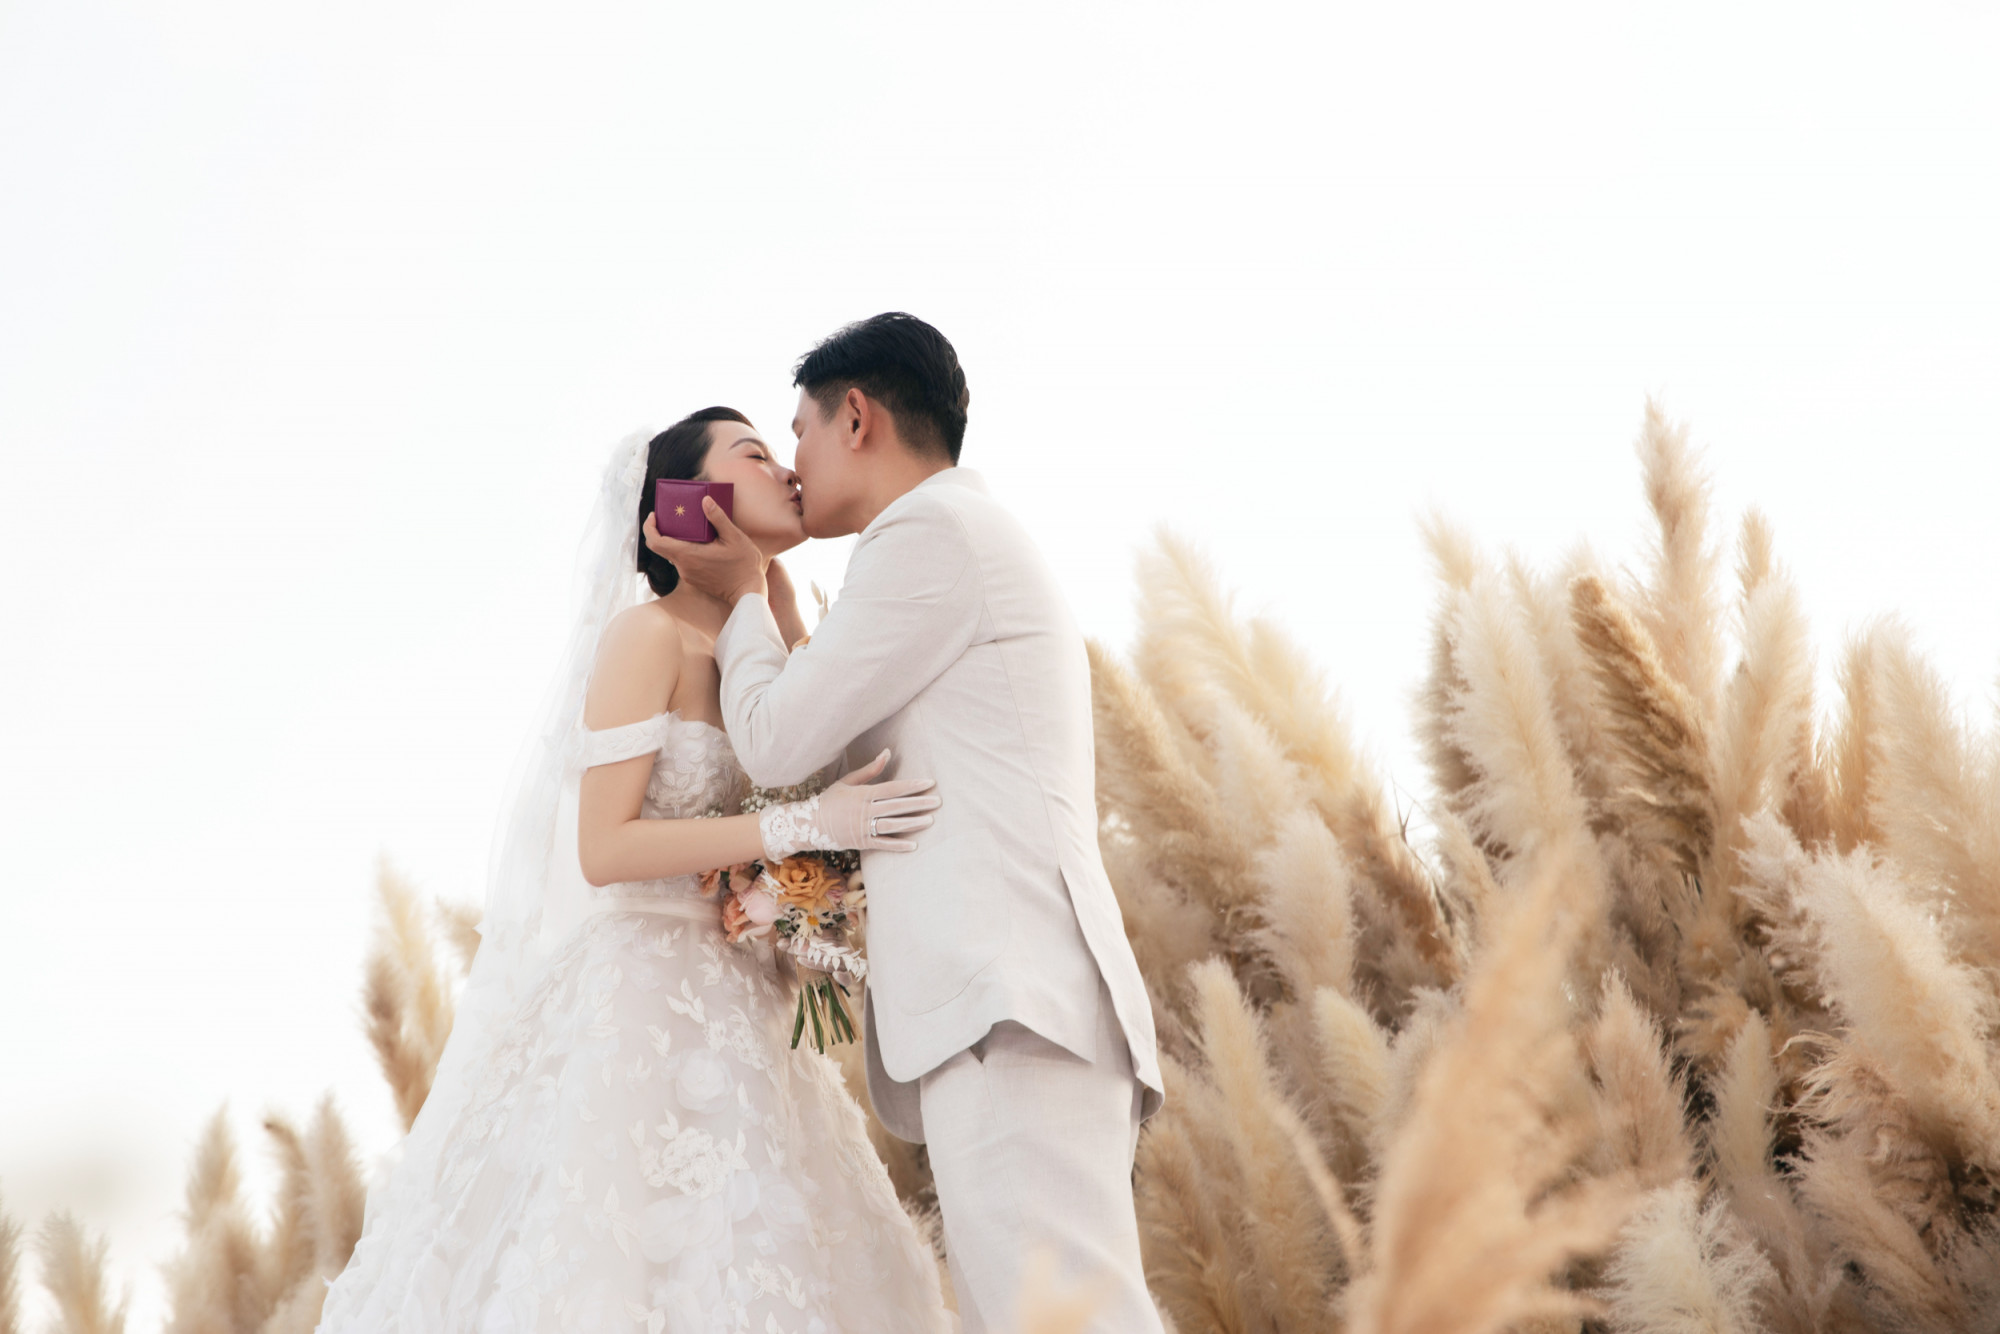 Hôn lễ của ca sĩ Minh Hằng diễn ra chiều 18/6, tại một resort ở Hồ Tràm, Vũng Tàu. Cô dâu diện hai váy cưới trong phần lễ và phần tiệc. 